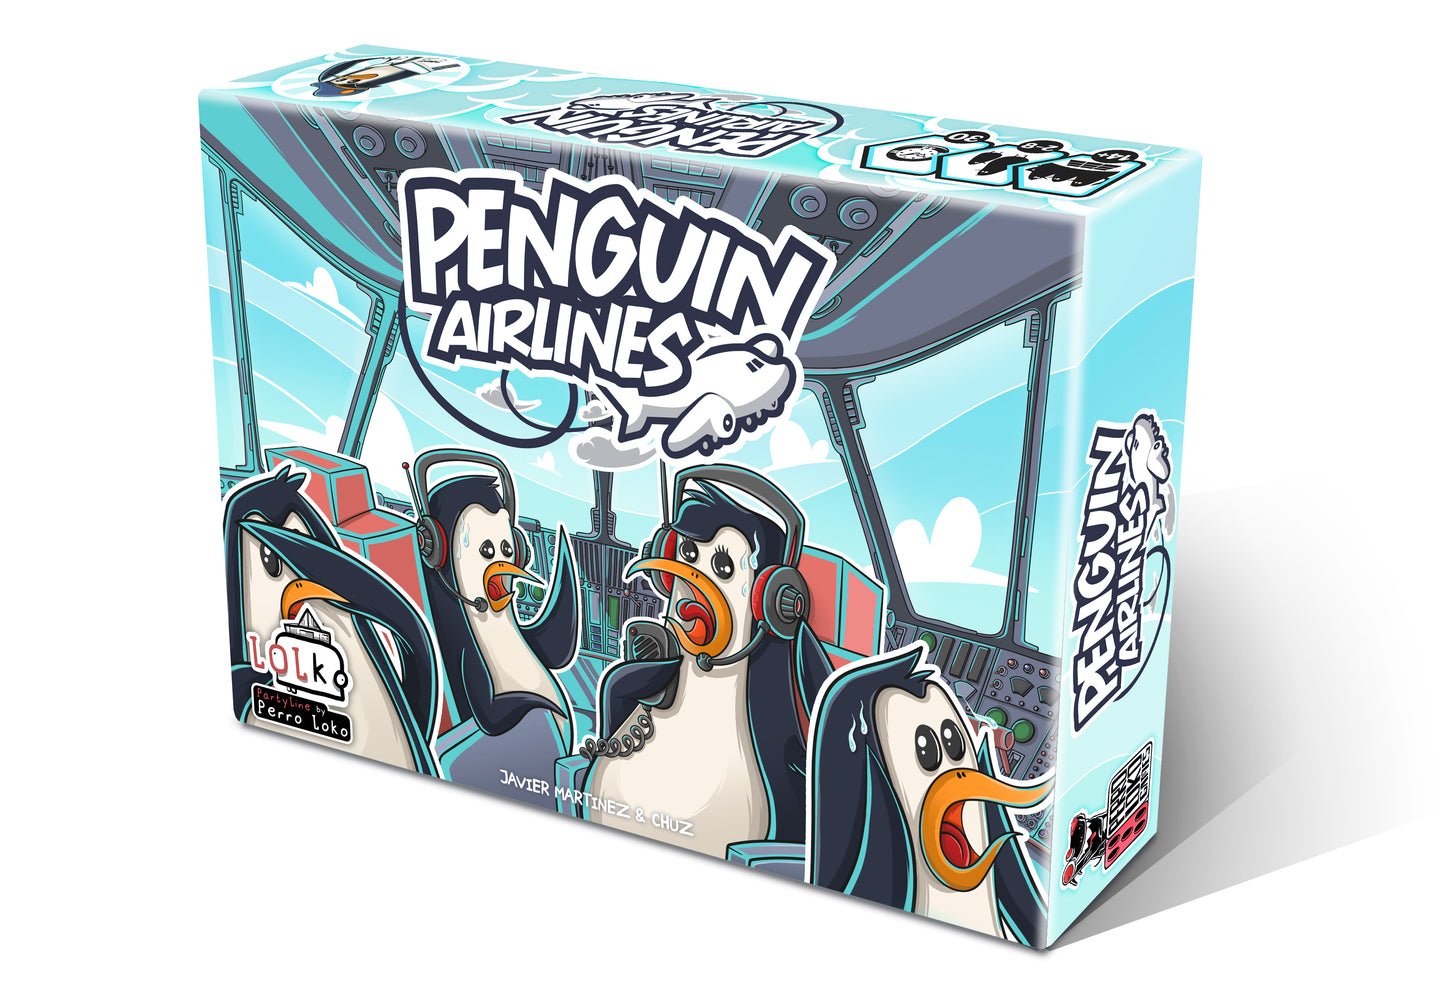 Penguin airlines | Perro Loco